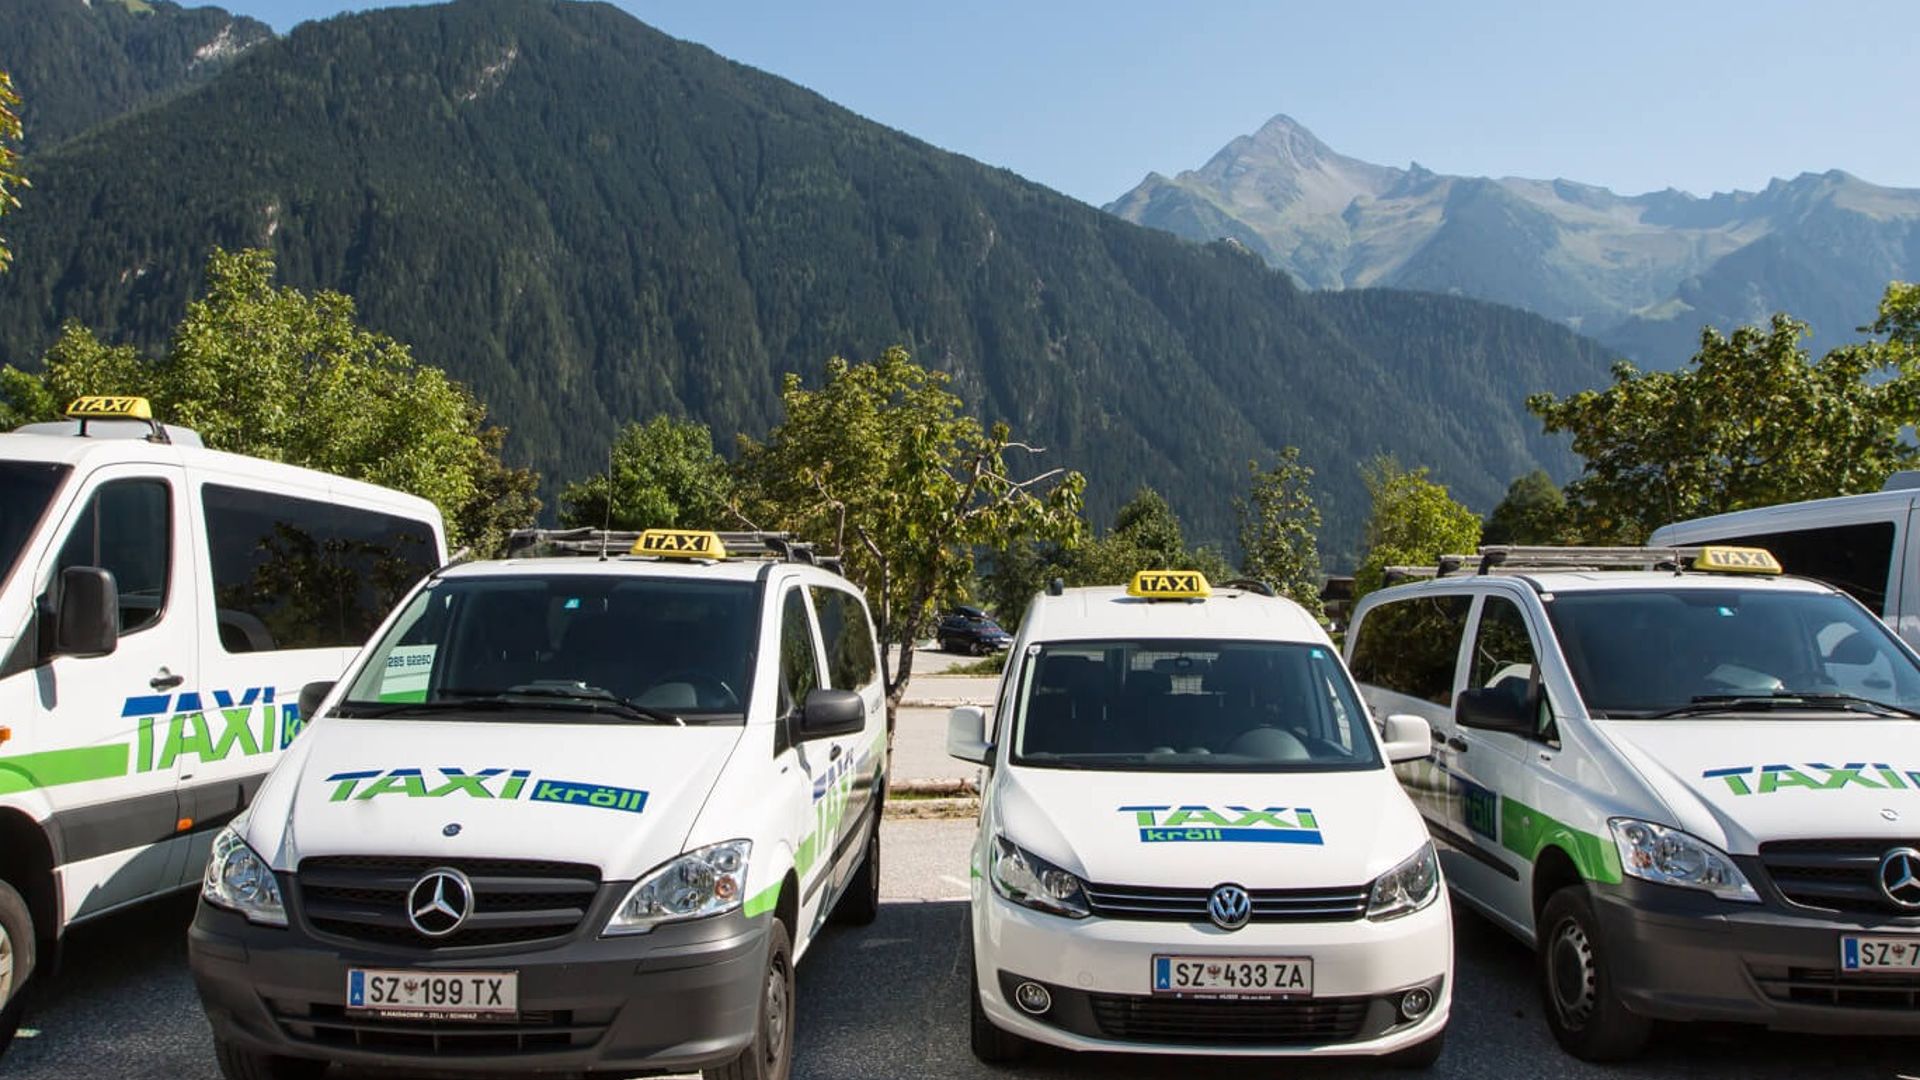 Taxi Kröll - Shuttleservice - Anreise ins Zillertal